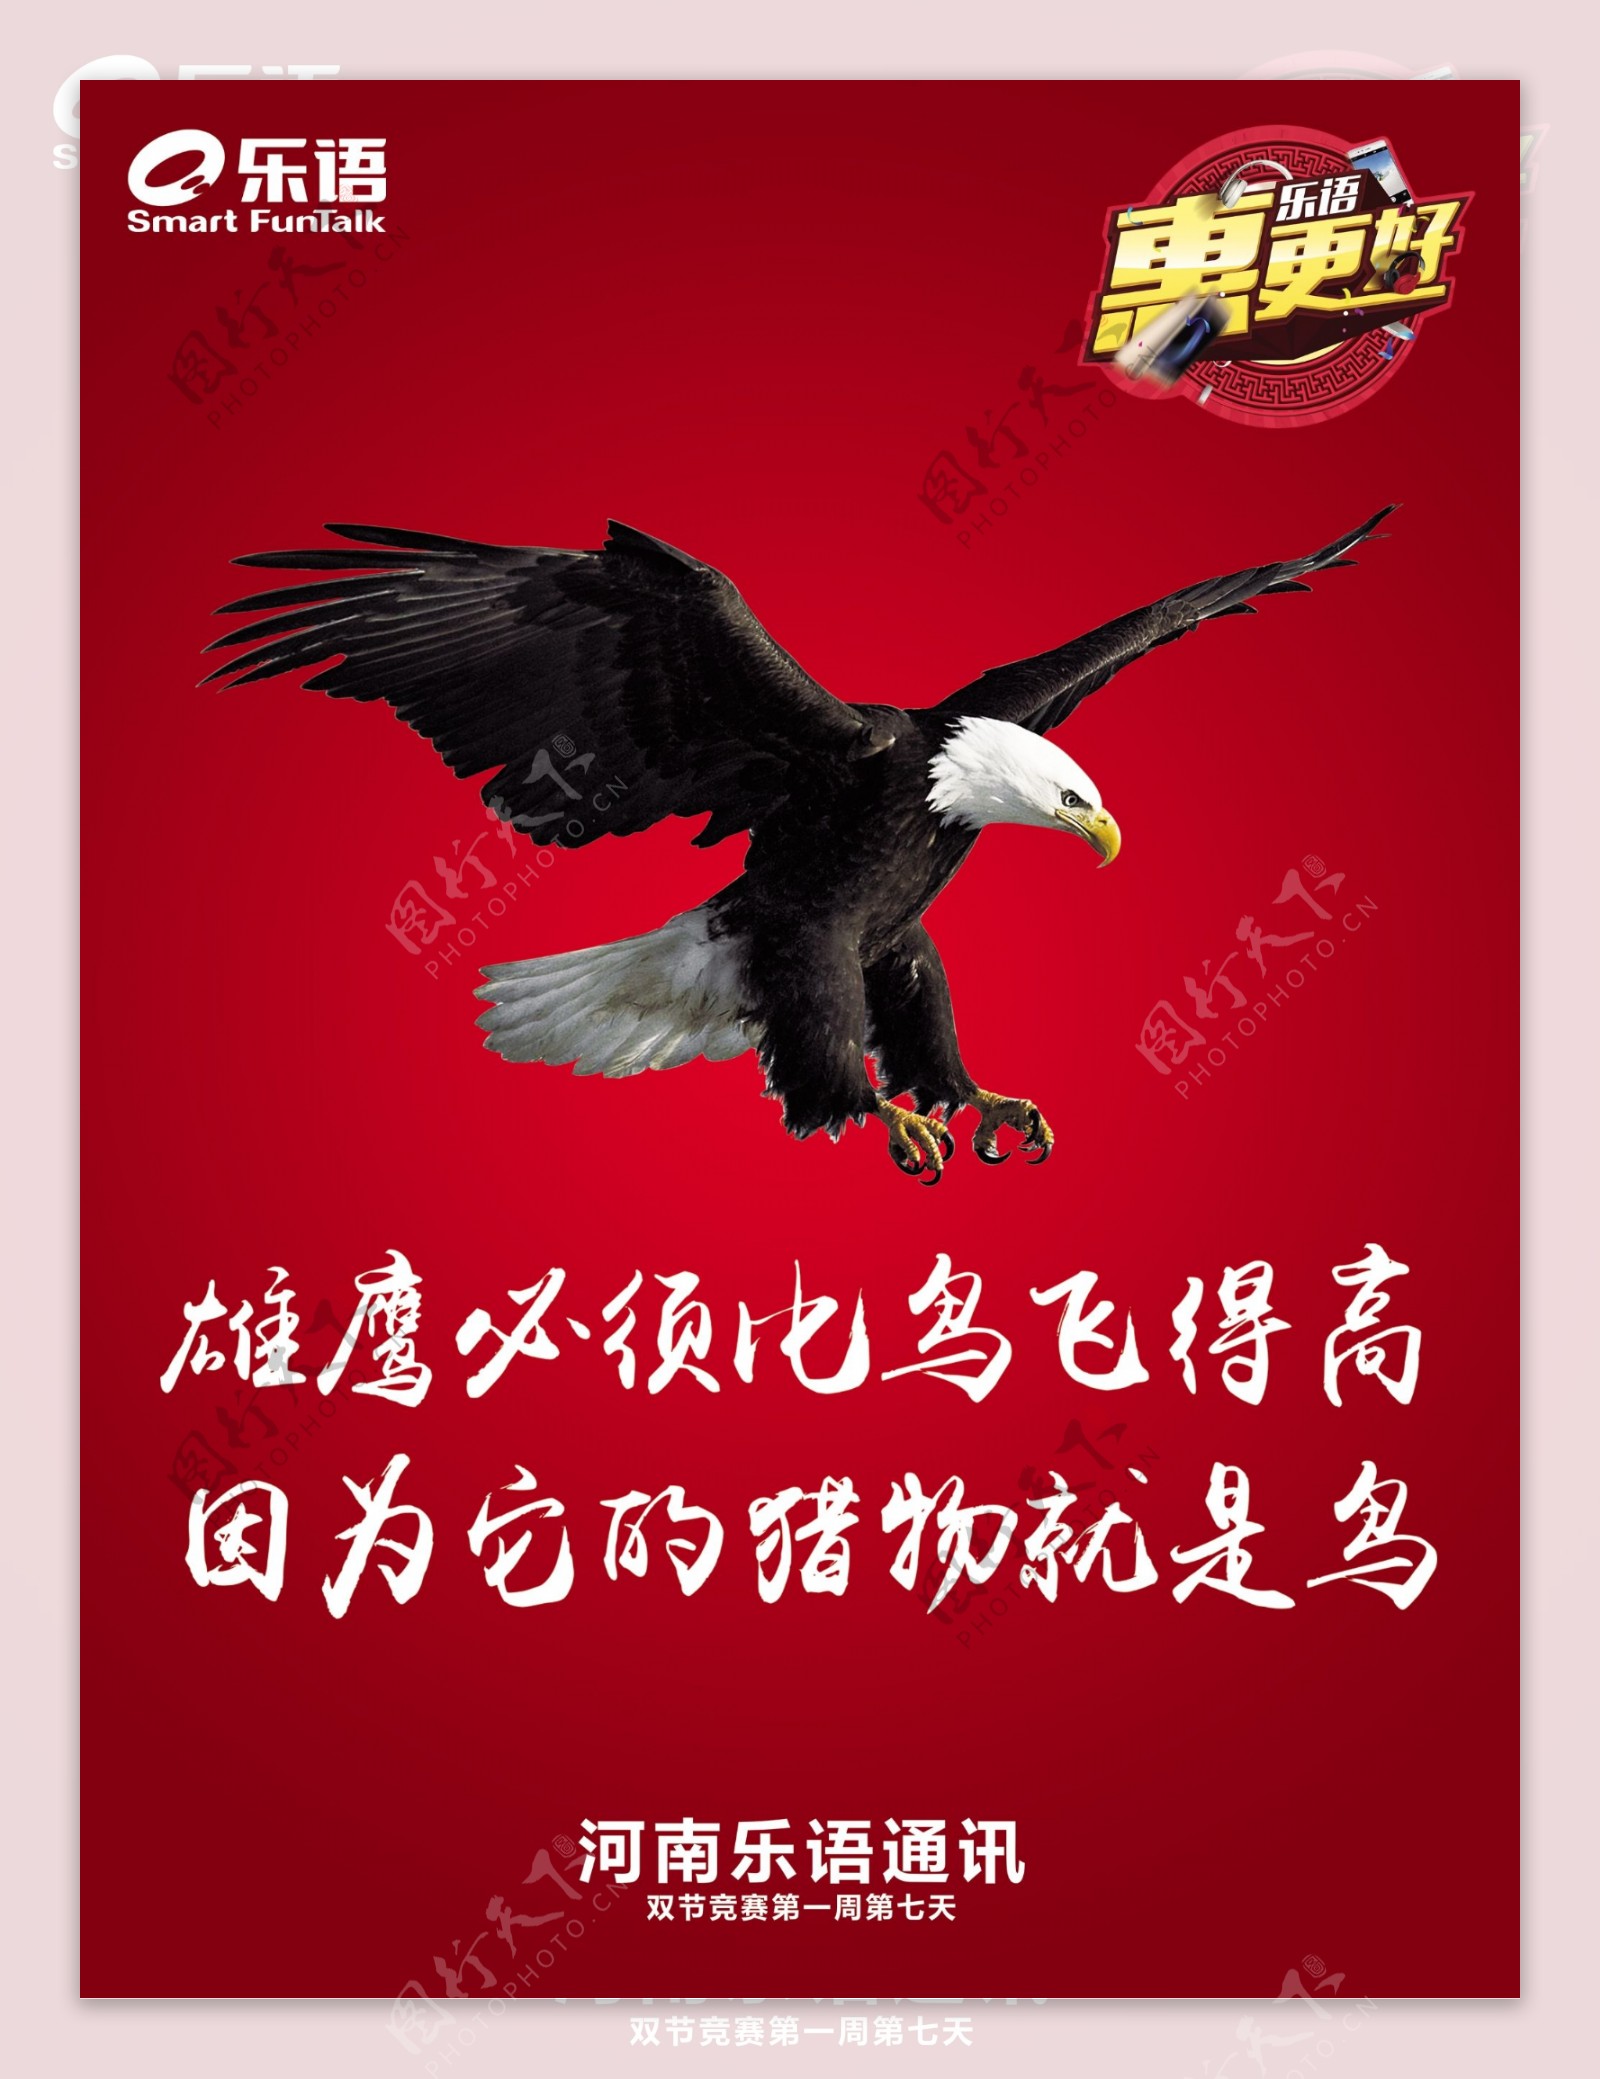 雄鹰展翅速度力量企业文化海报